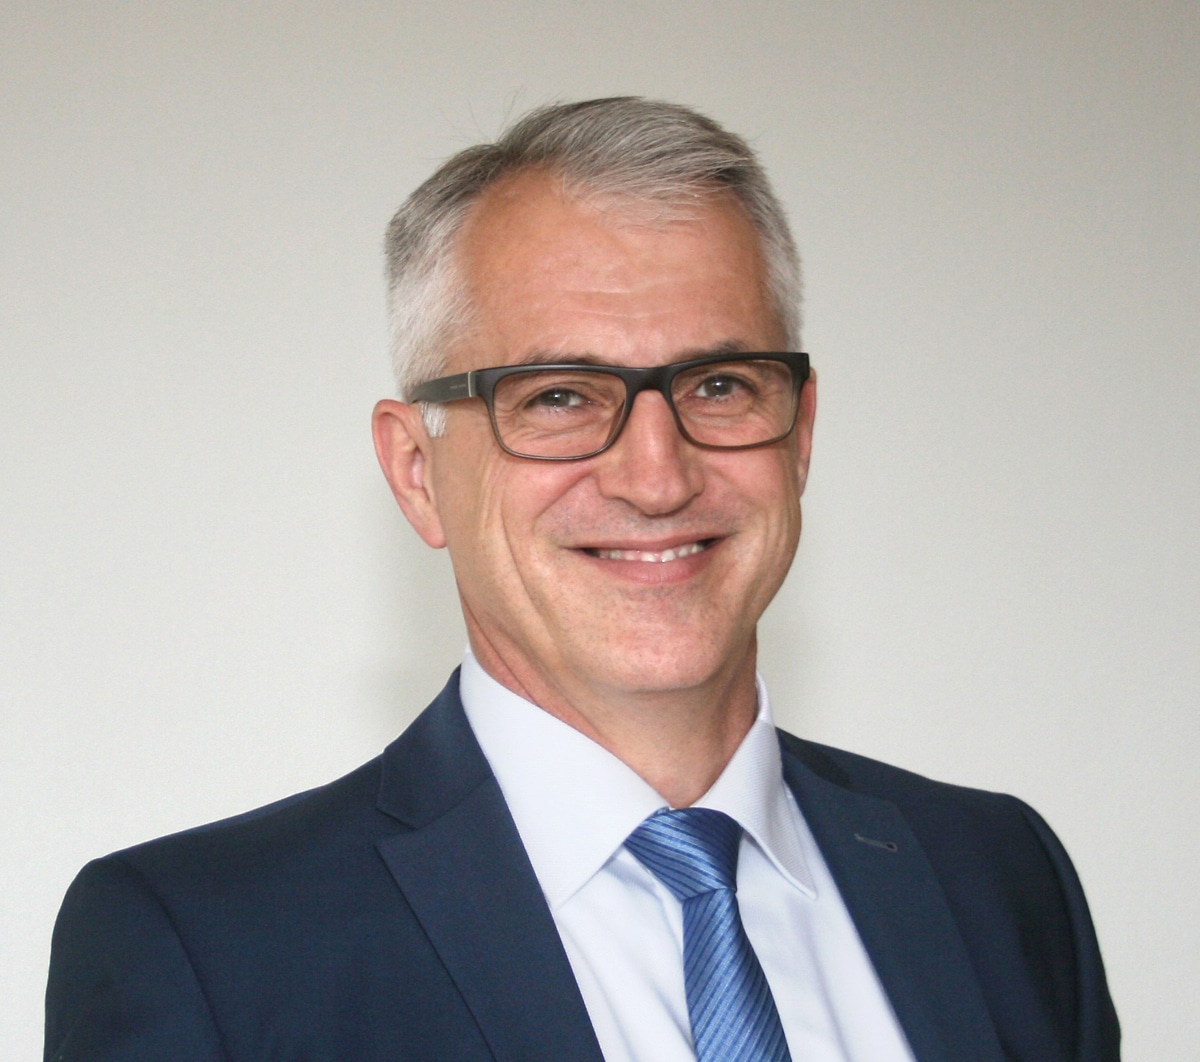 Andreas Rauscher ergänzt als Technischer Geschäftsführer die Geschäftsführung der Steinbeis Papier GmbH in Glückstadt.